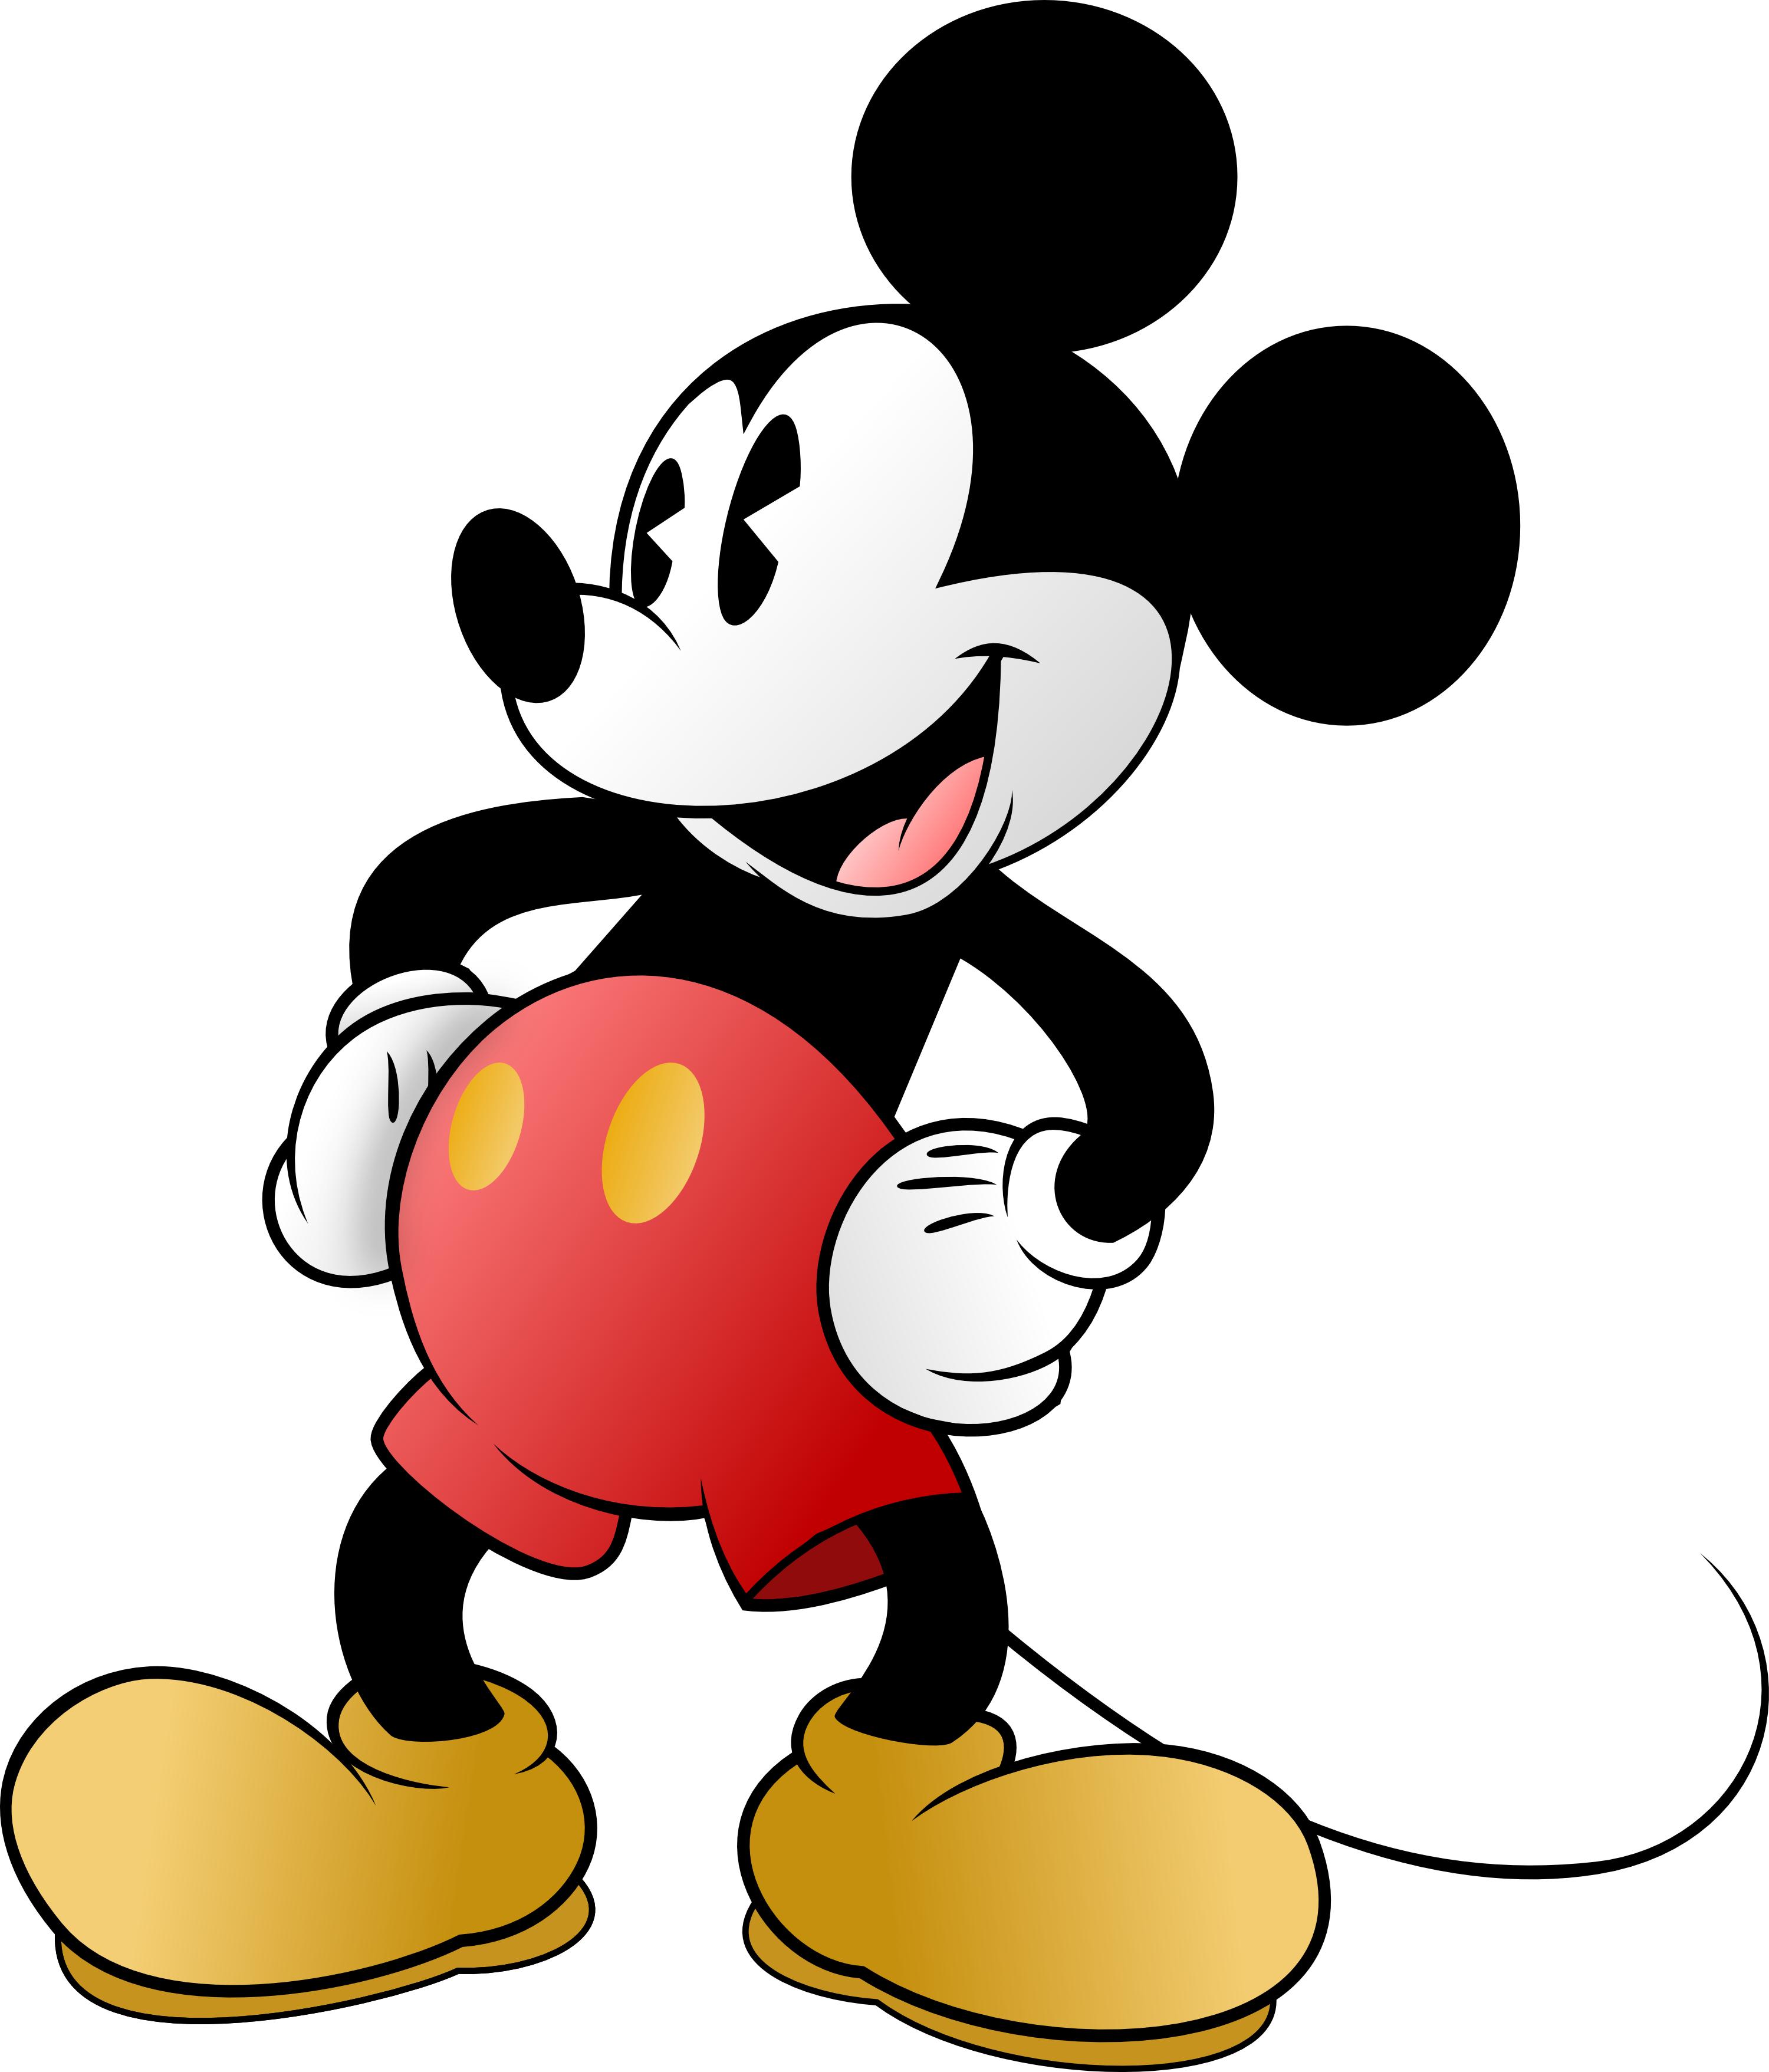 Mickey Mouse by MrCbleck on DeviantArt